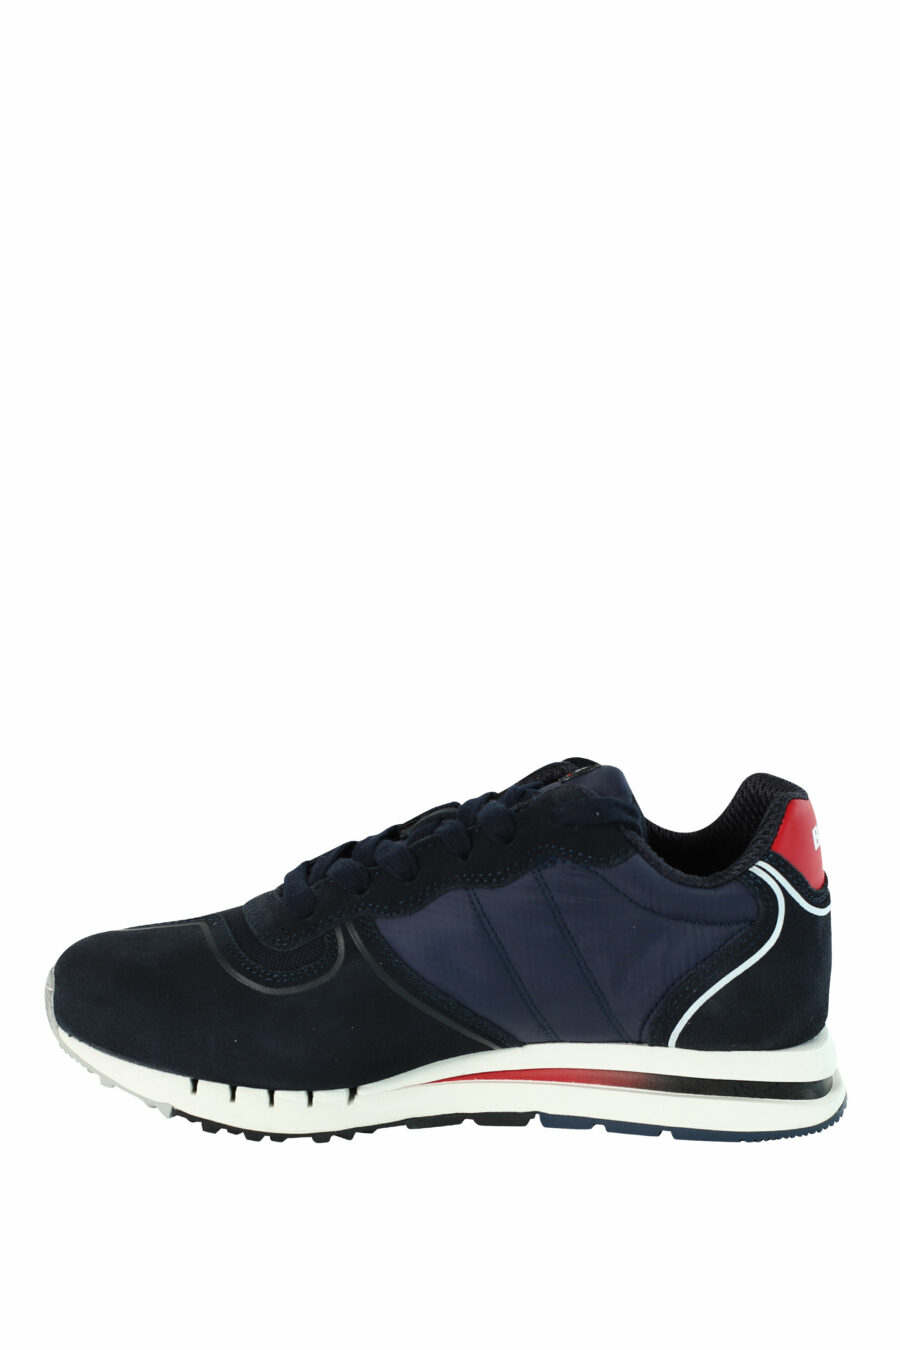 Blue "QUARTZ" shoes with red details - 8058156499454 3